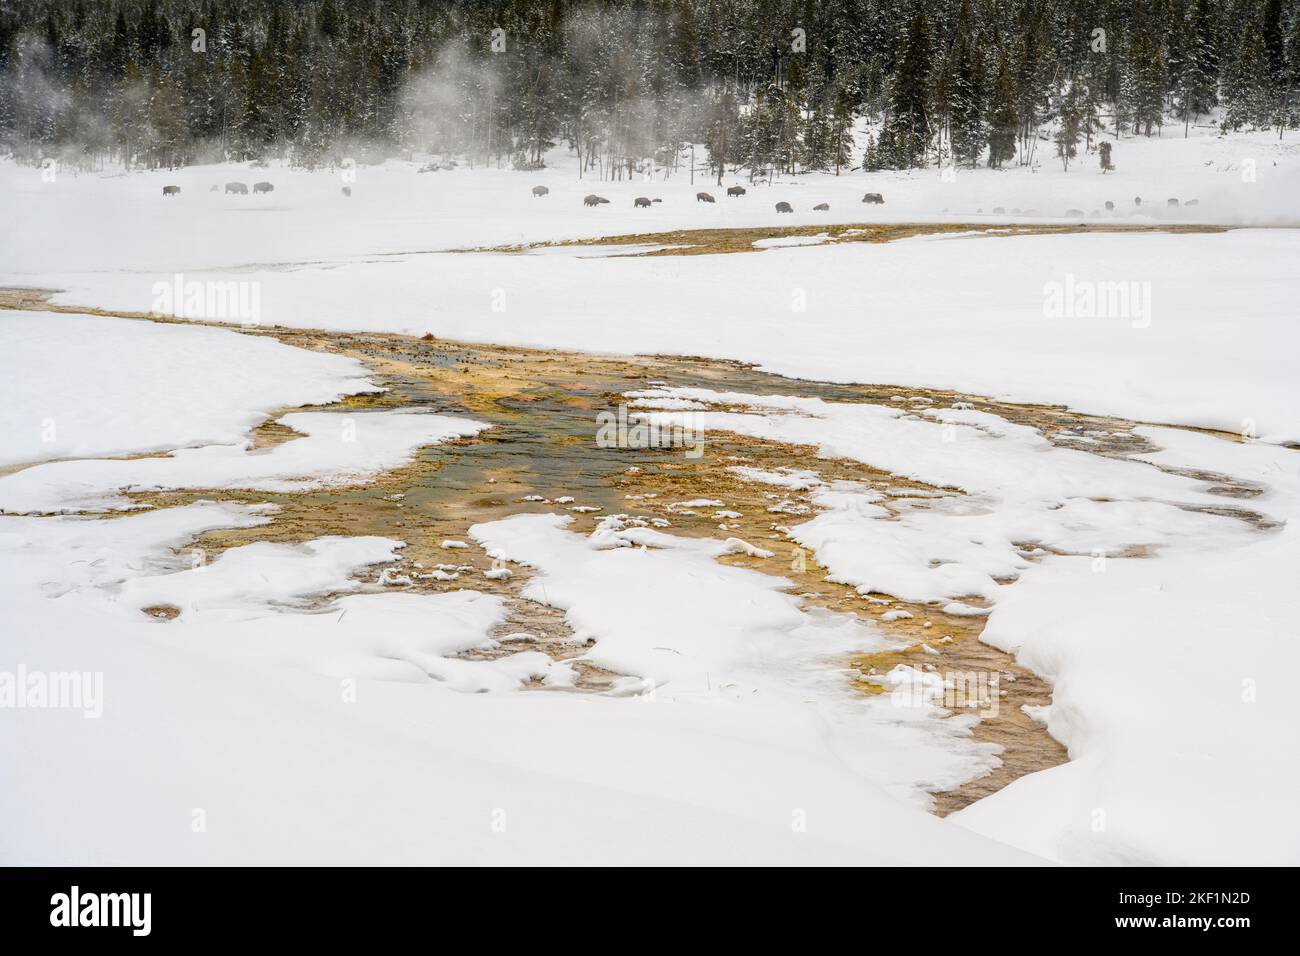 Offenes Wasser in einem Thermalbad in einer Winterlandschaft (Fountain Flats), Yellowstone National Park, Wyoming, USA Stockfoto